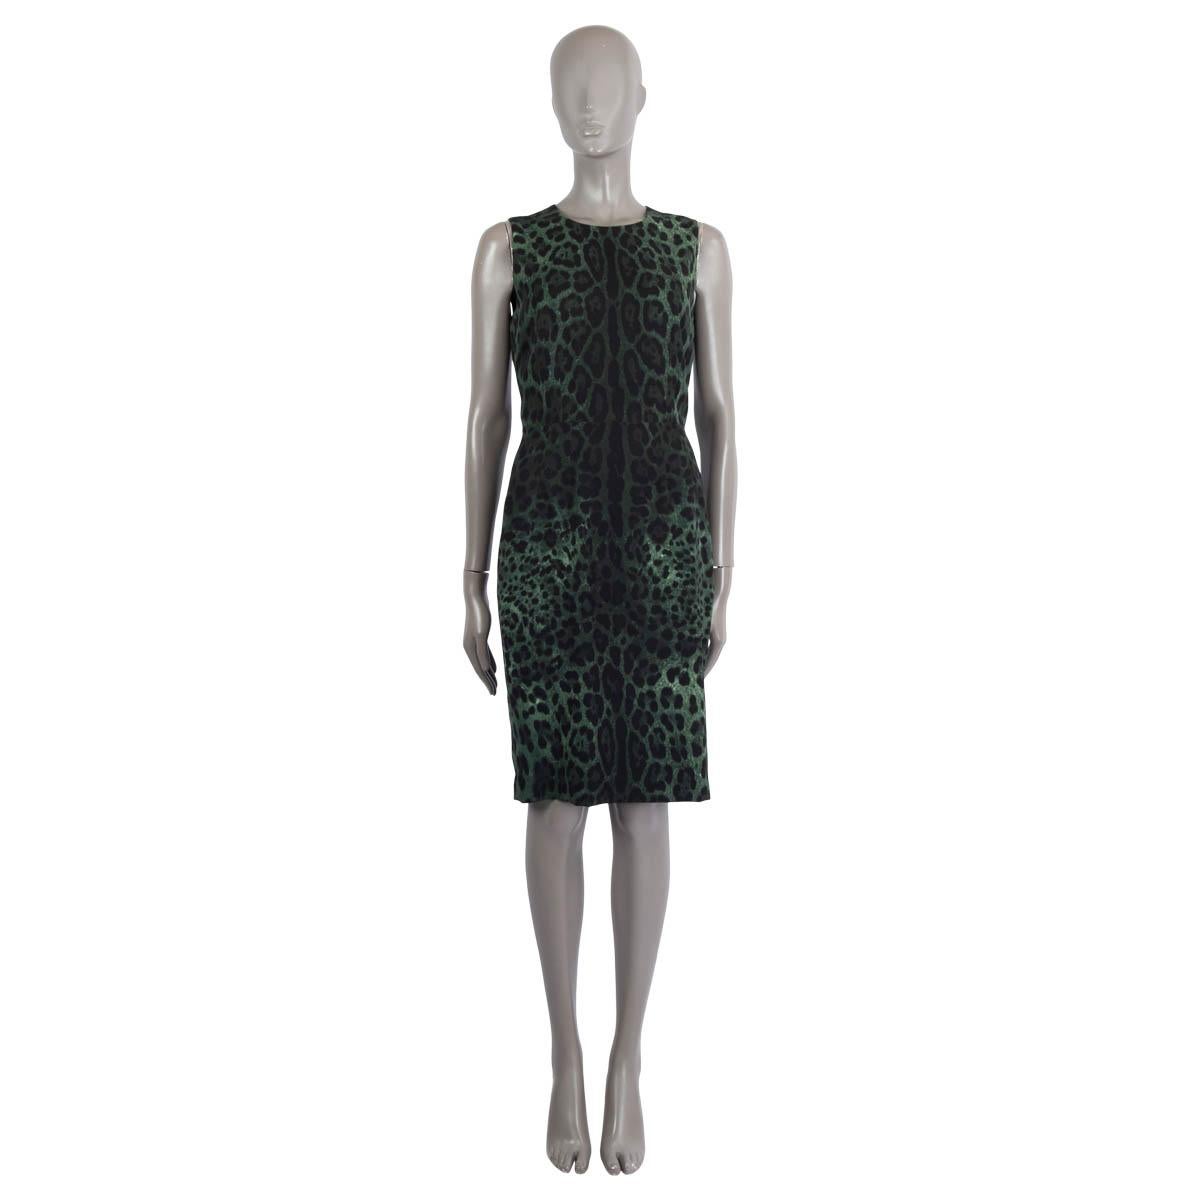 100% authentisches ärmelloses Kleid von Dolce & Gabbana mit Leopardenmuster aus schwarzer und grüner Seide (95%) und Elastan (5%). Mit einem Schlitz auf der Rückseite. Gefüttert mit schwarzer Seide (95%) und Elastan (5%). Wird mit einem verdeckten